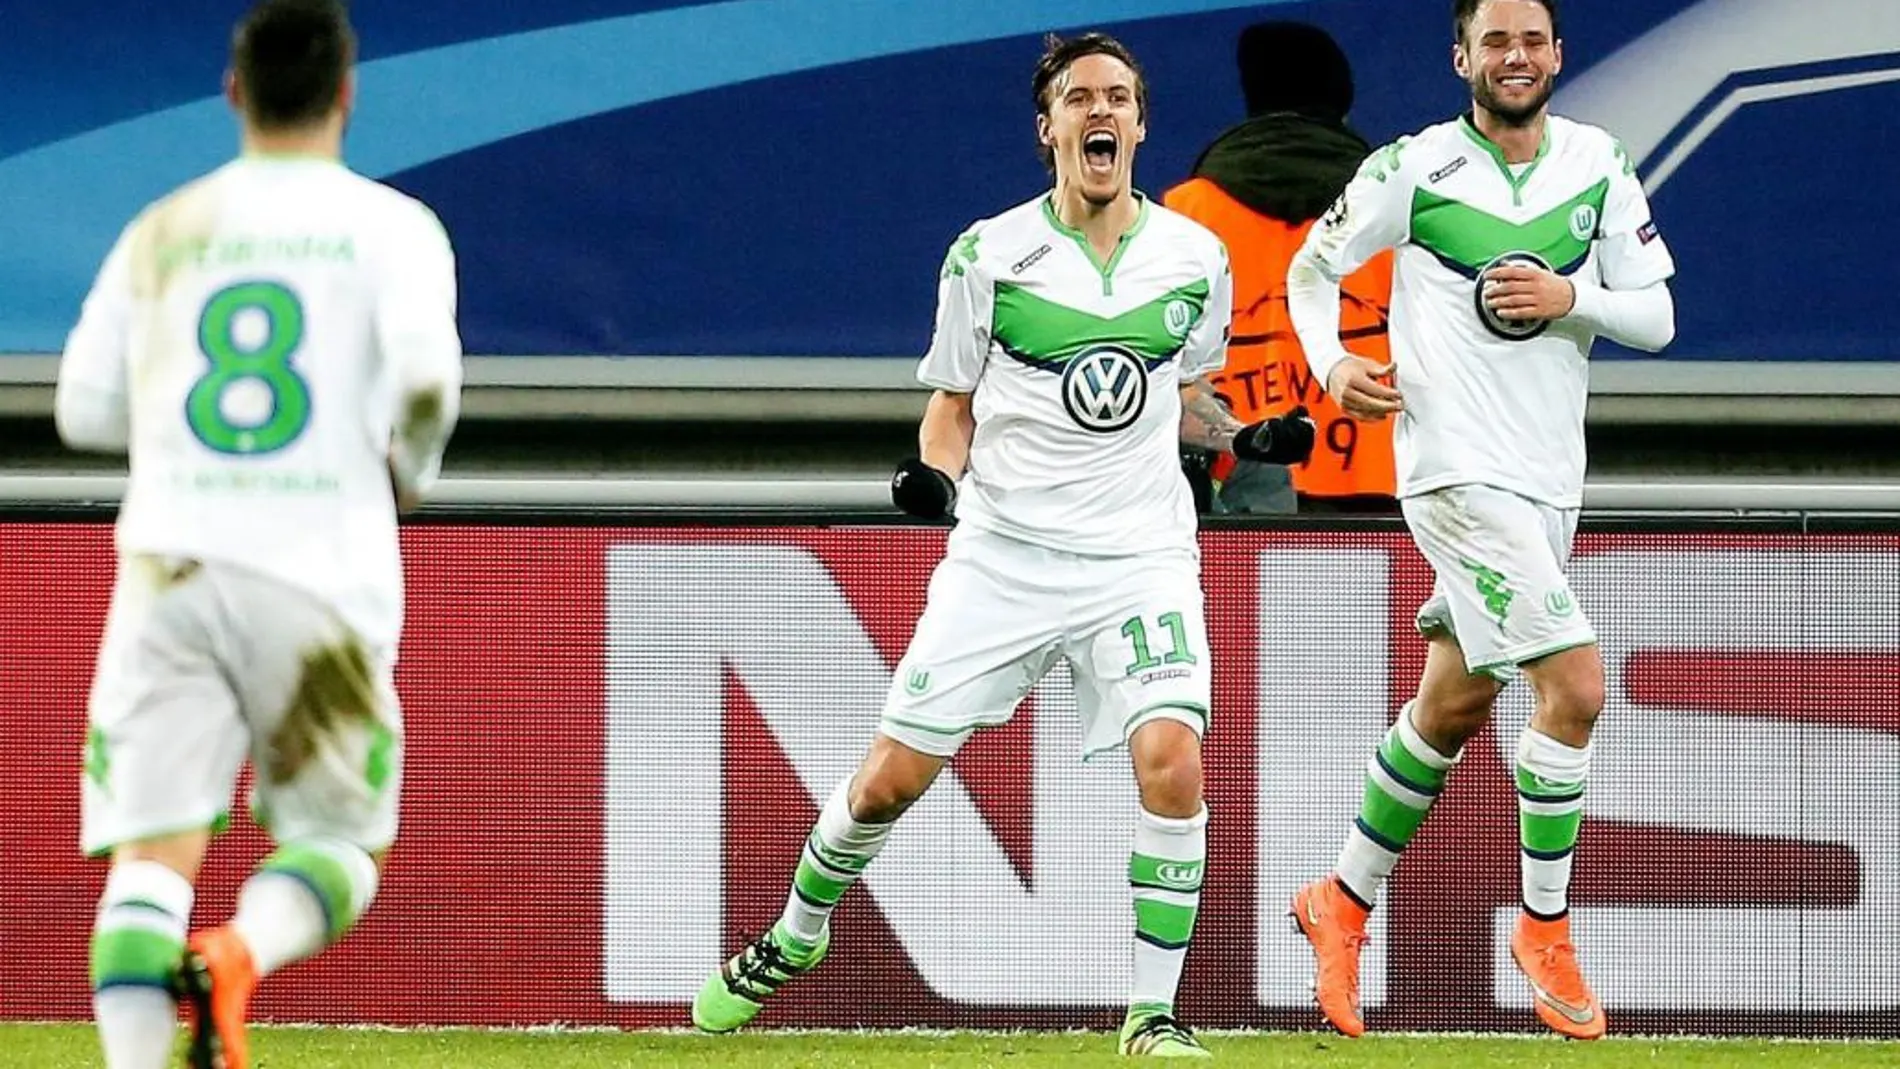 El jugador del Wolfsburgo Julian Draxler (c) celebra tras anotar el tercer gol de su equipo